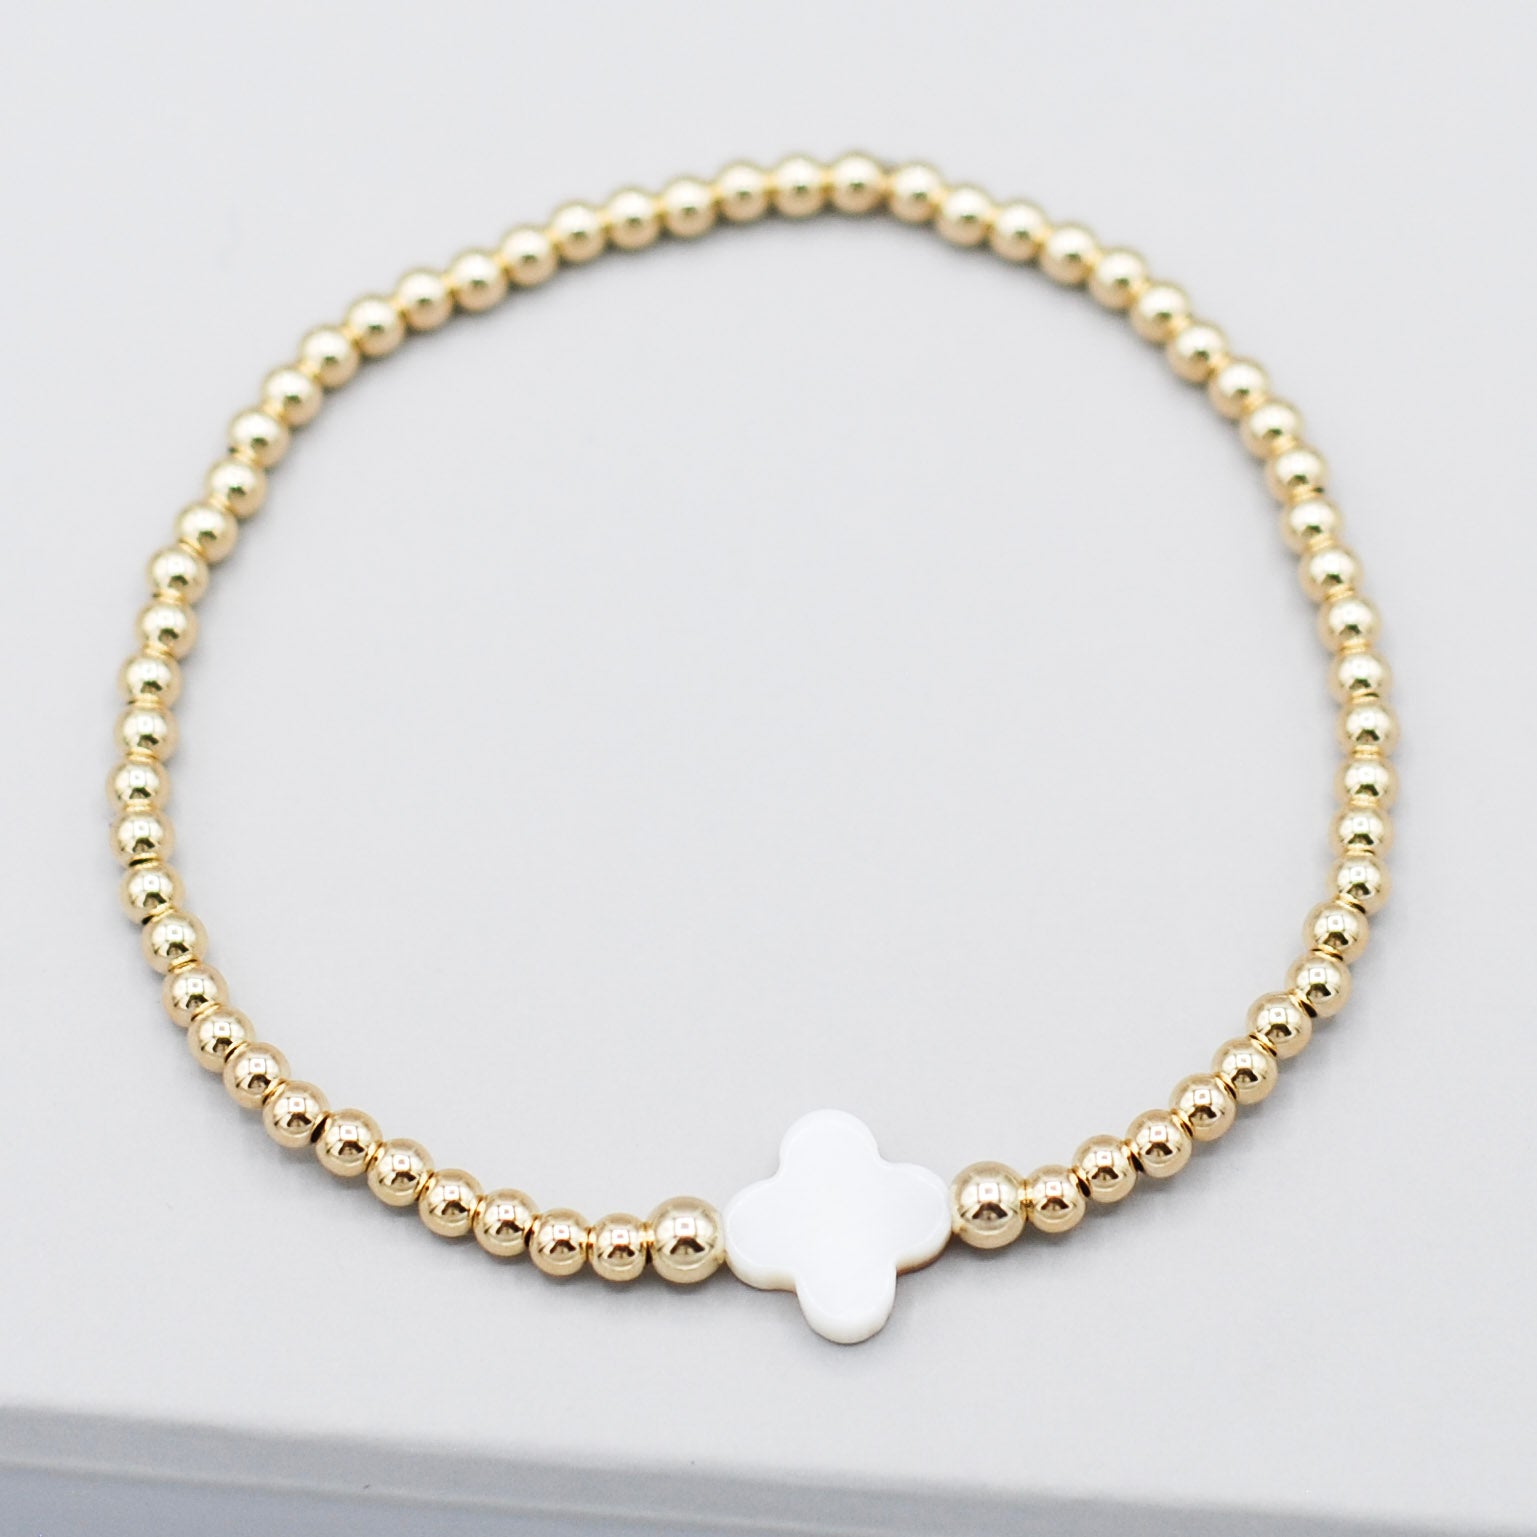 4mm 14k Gold Filled & Mother of Pearl Clover Bracelet - Jewel Ya